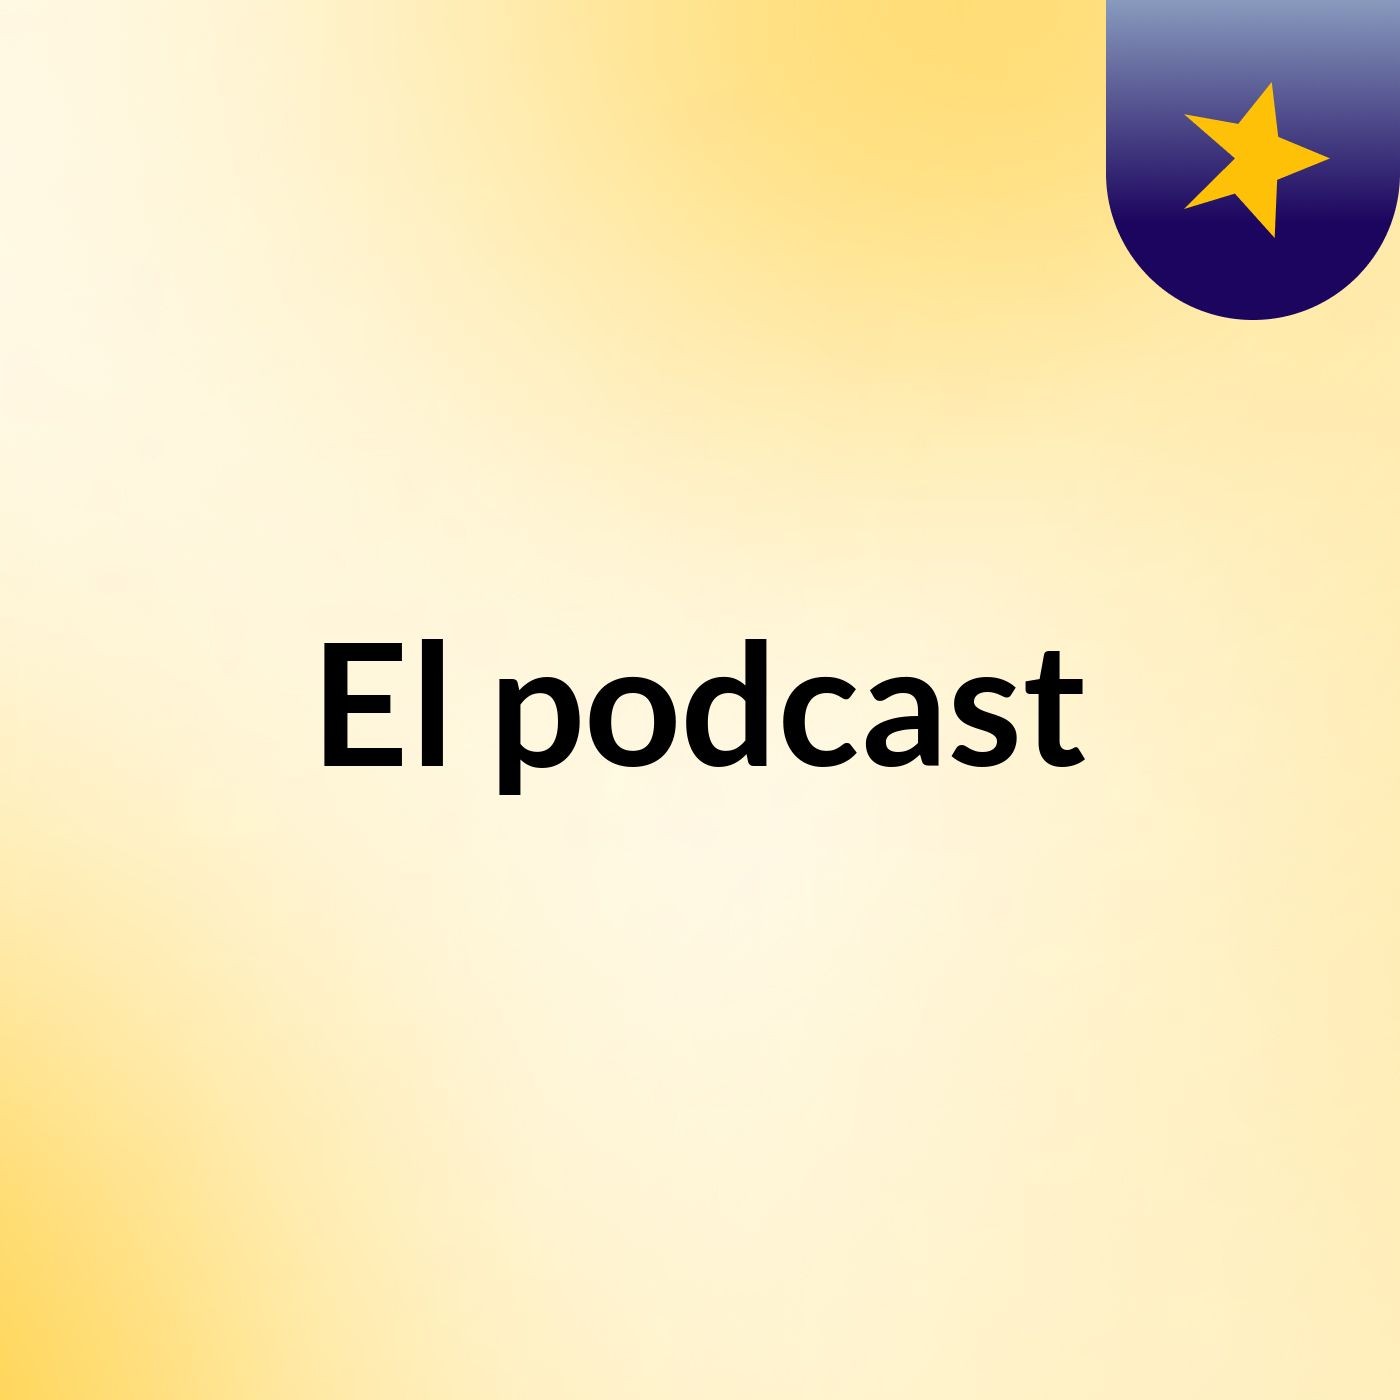 El podcast